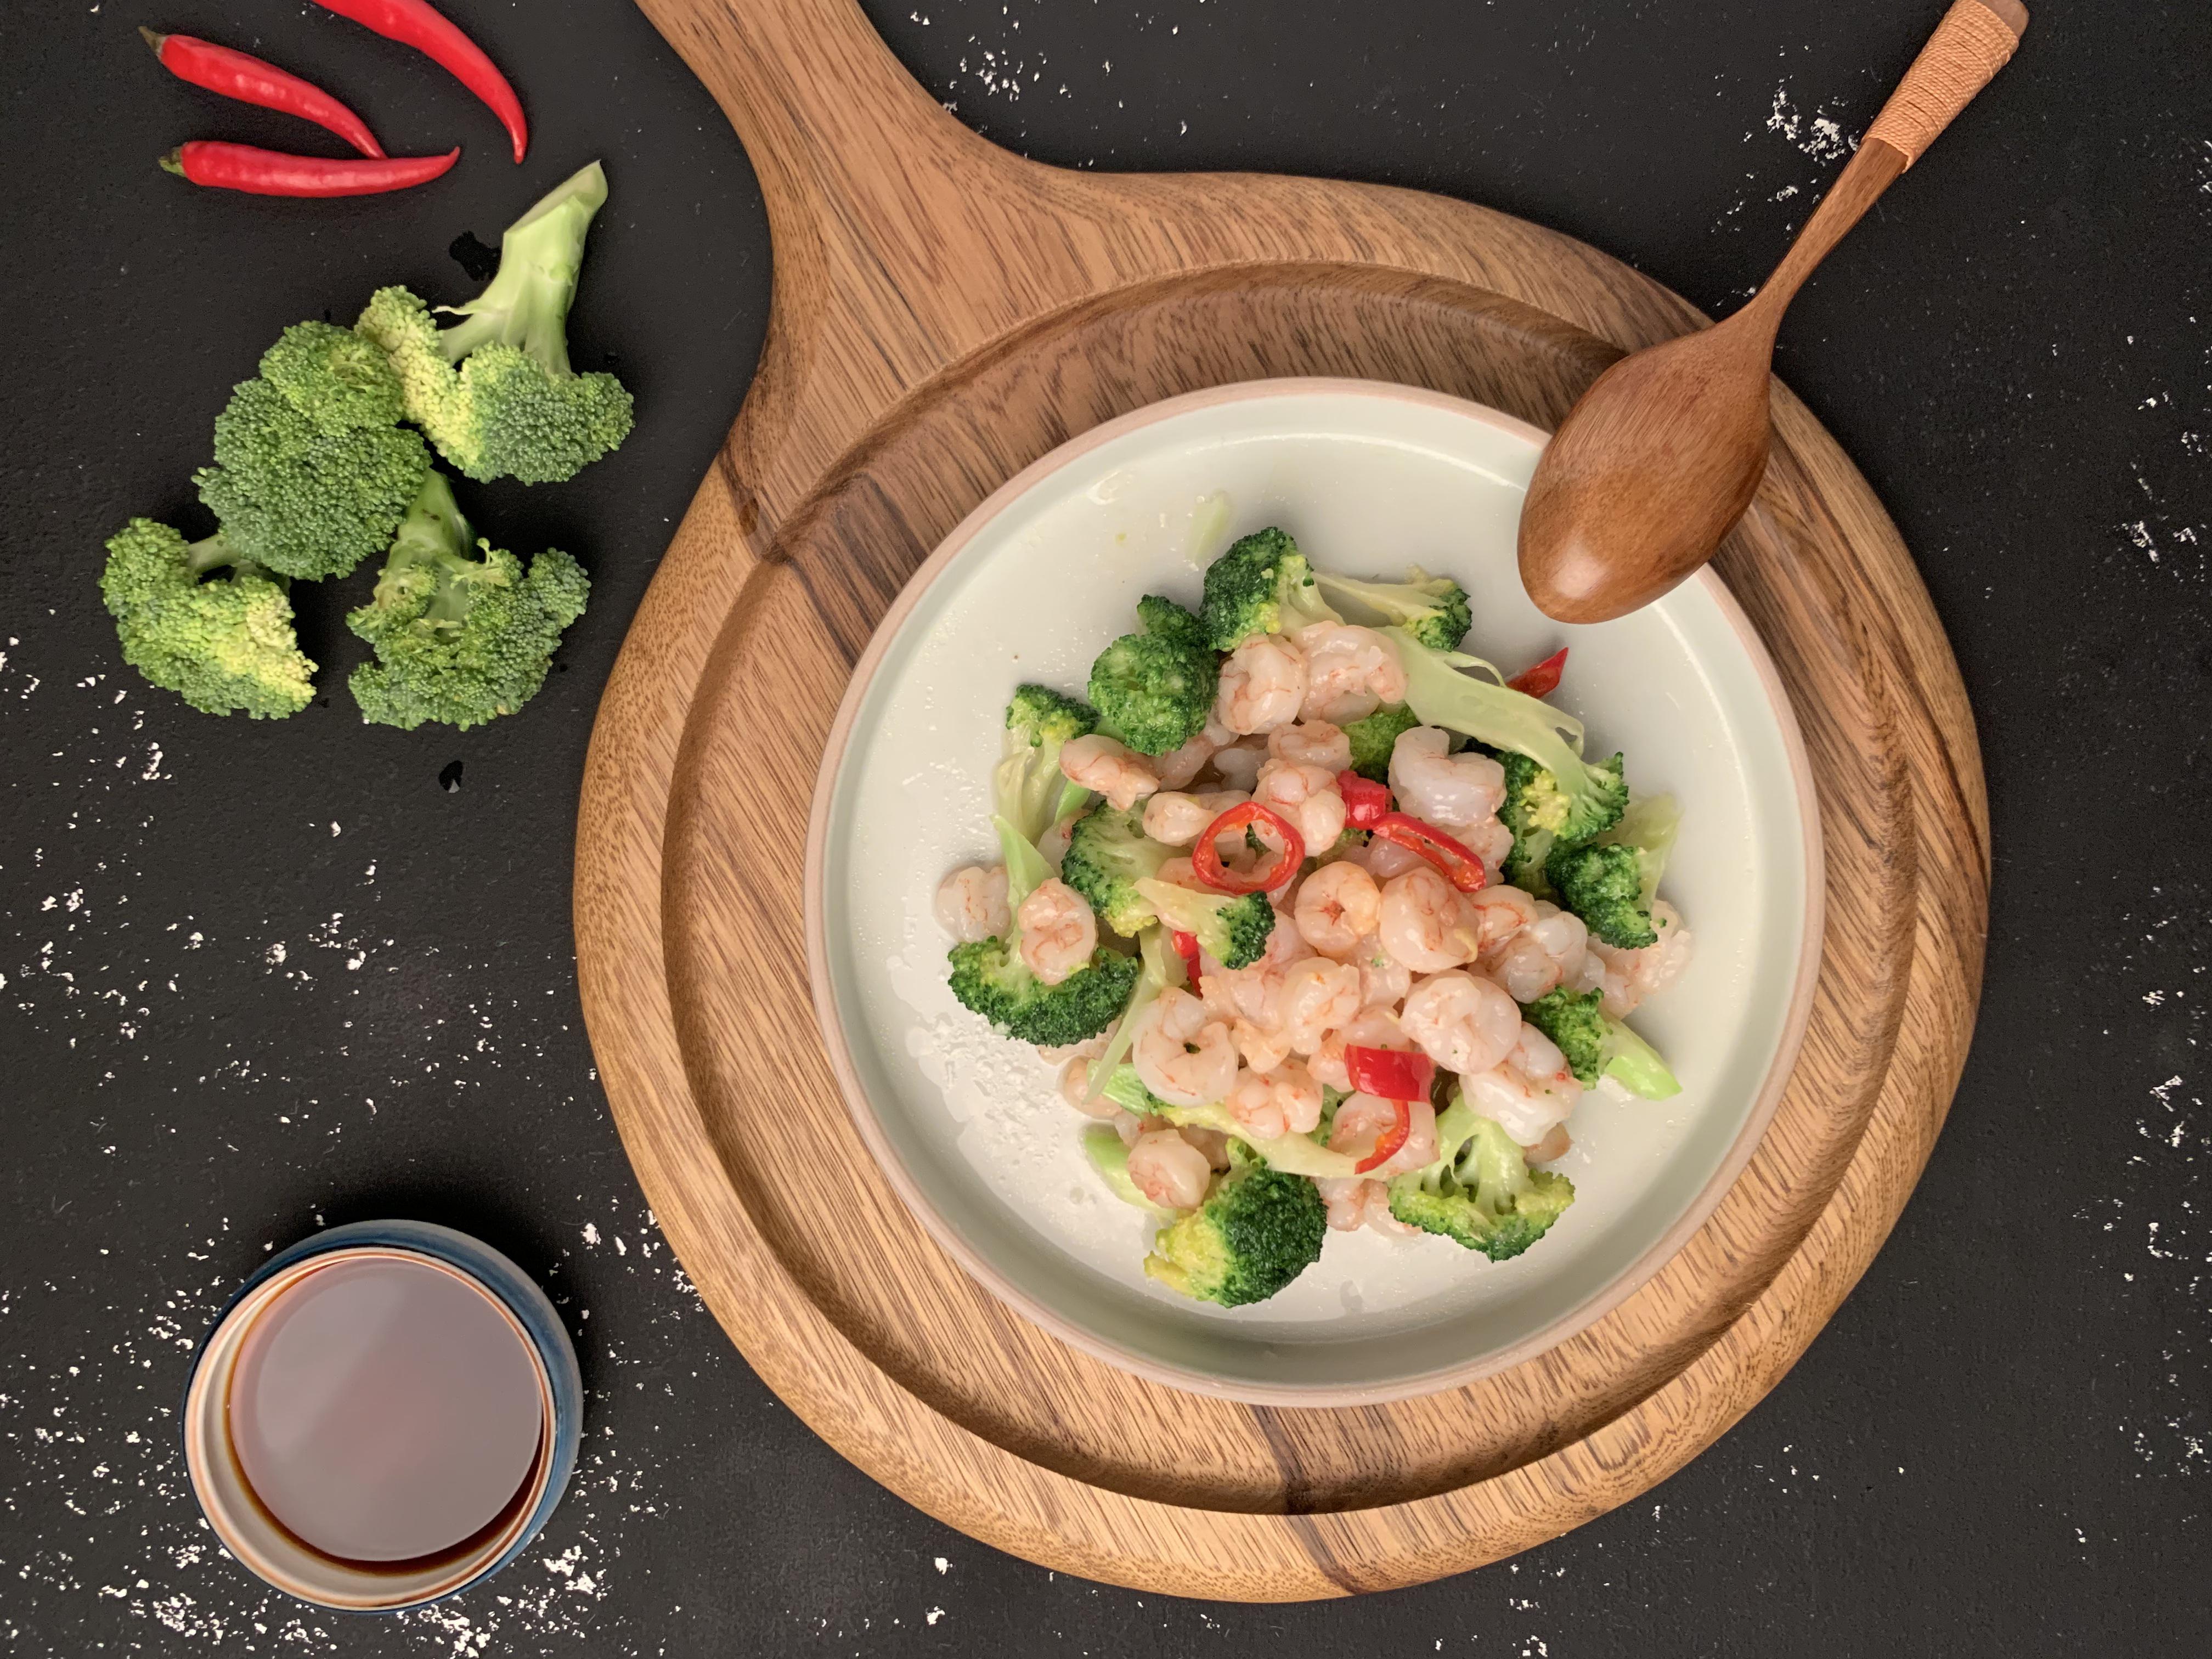 Orecchiette with broccoli and prawns